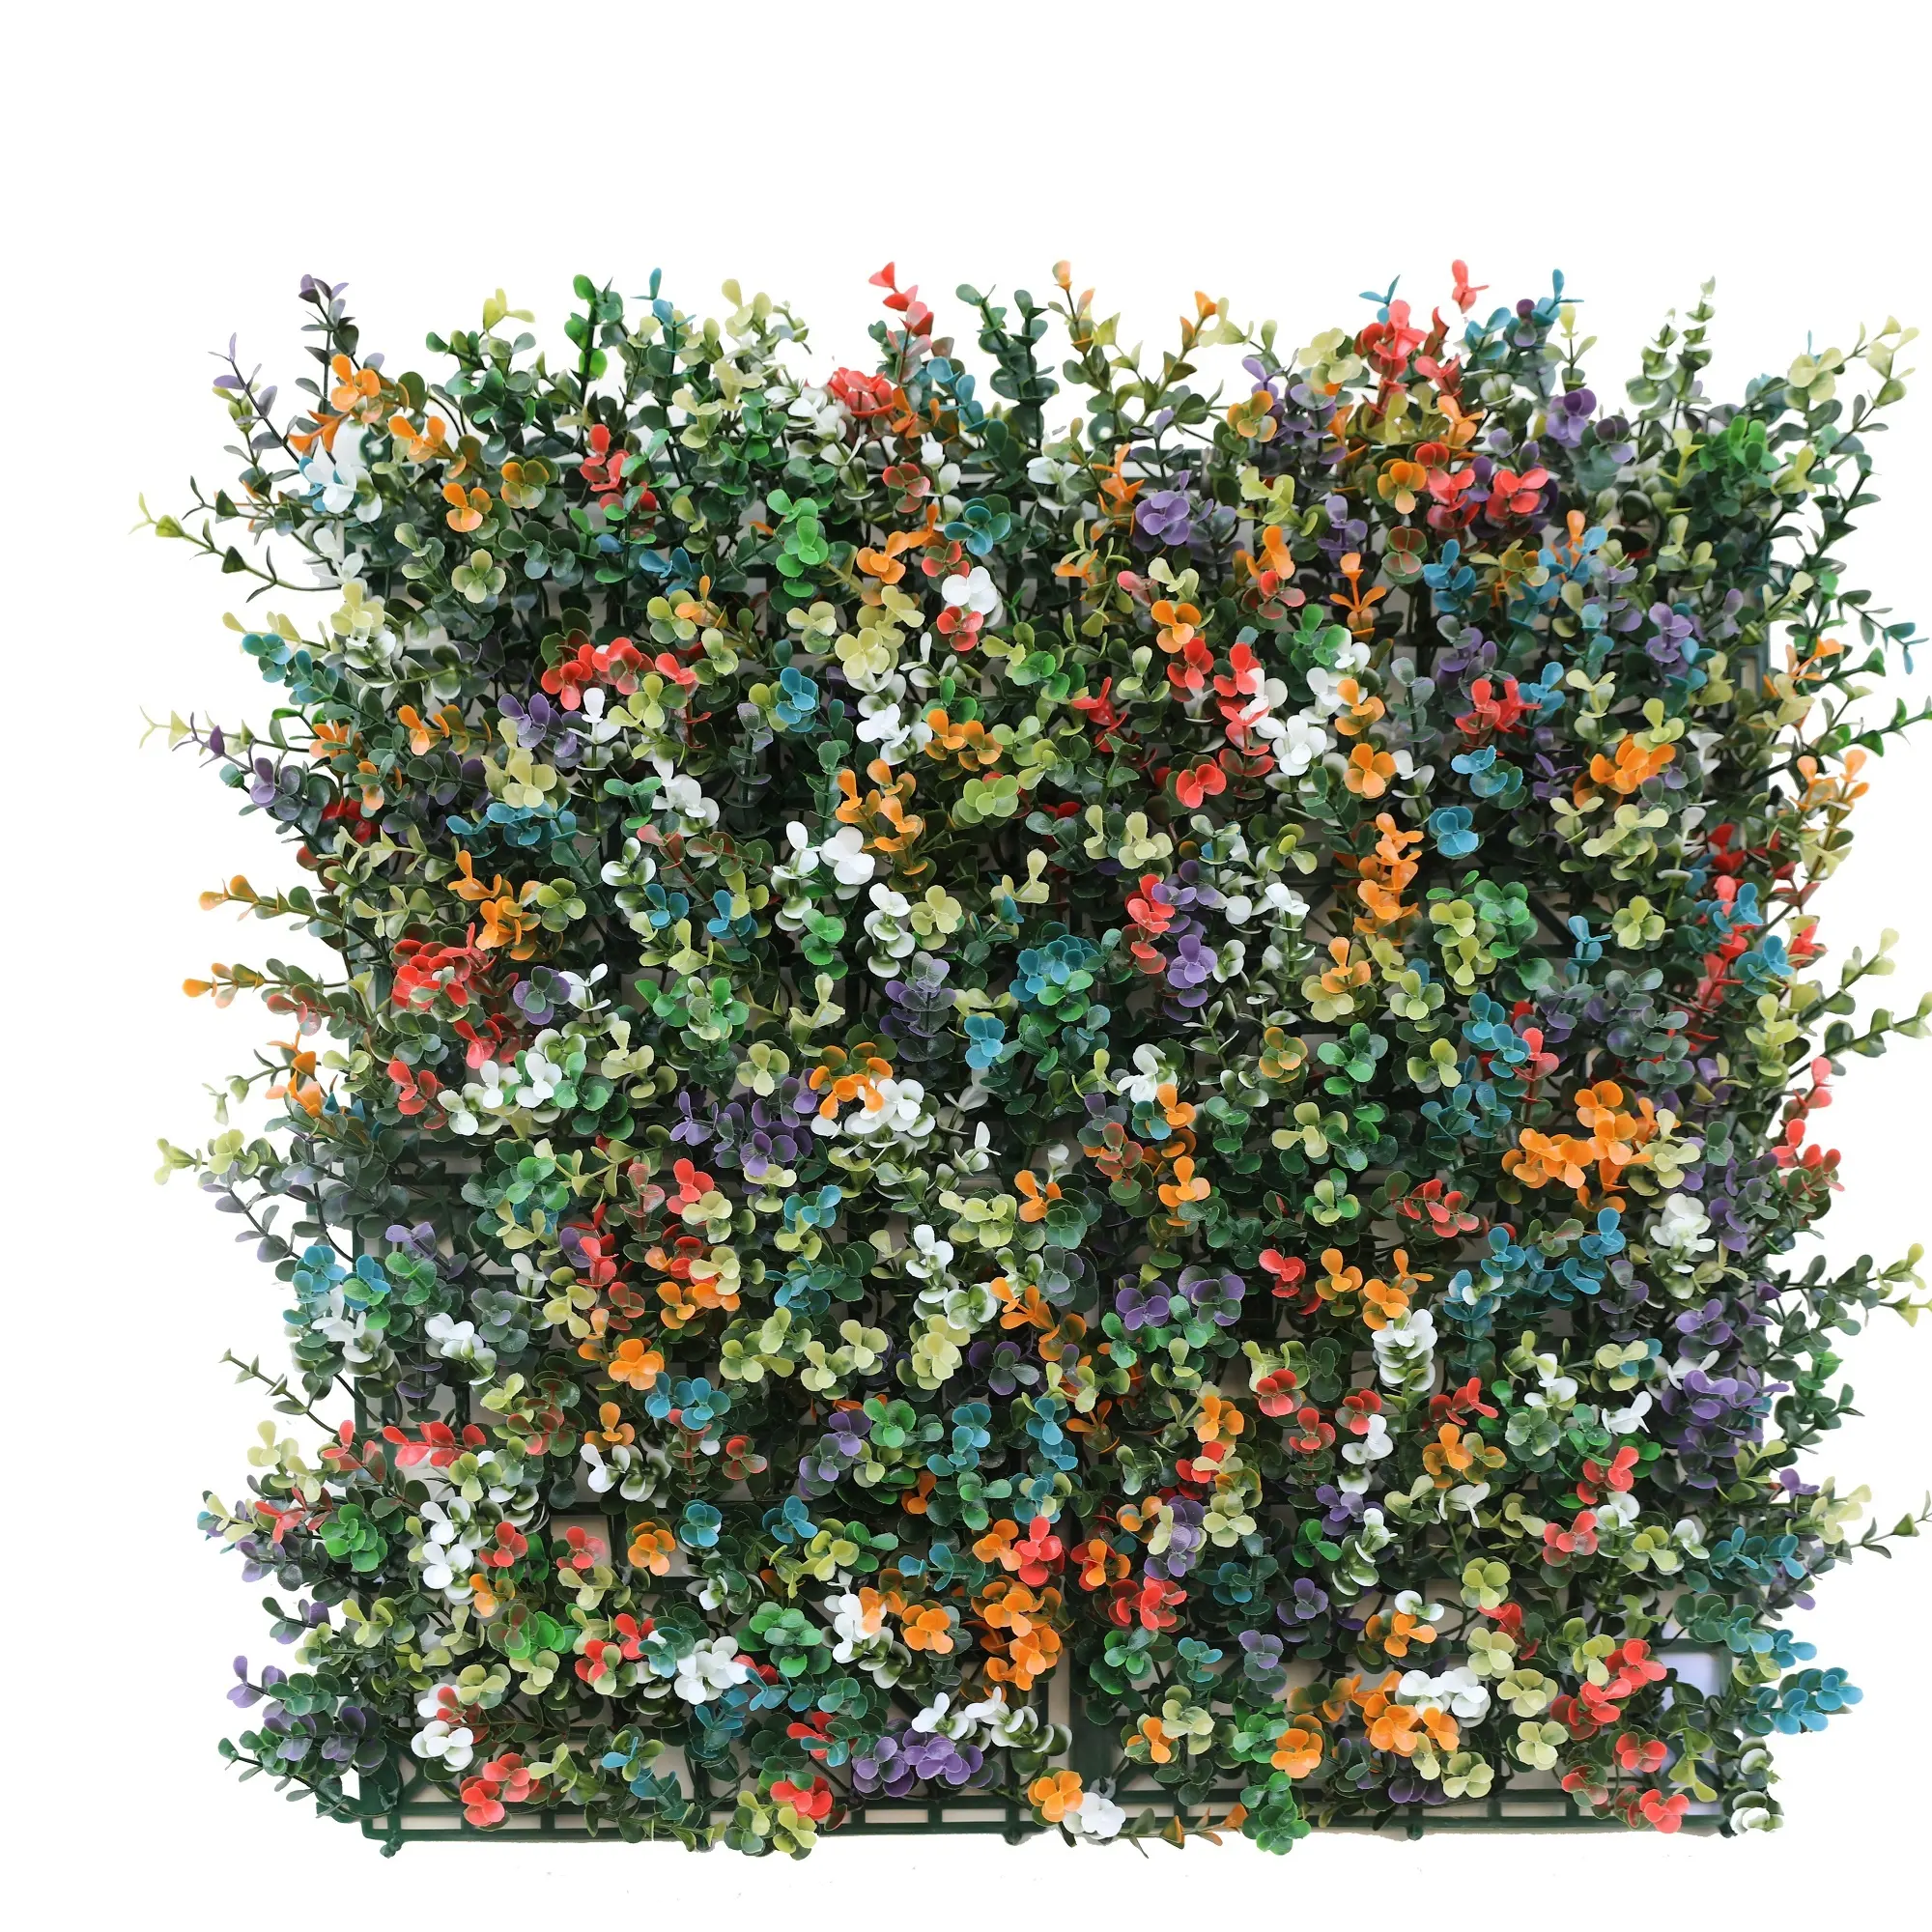 أحدث تصميمات الجدران الخضراء-منتجات جديدة, أحدث تصميمات الجدران الخضراء-جدار اصطناعي لنباتات الزينة-جدار اصطناعي لنباتات الزهور